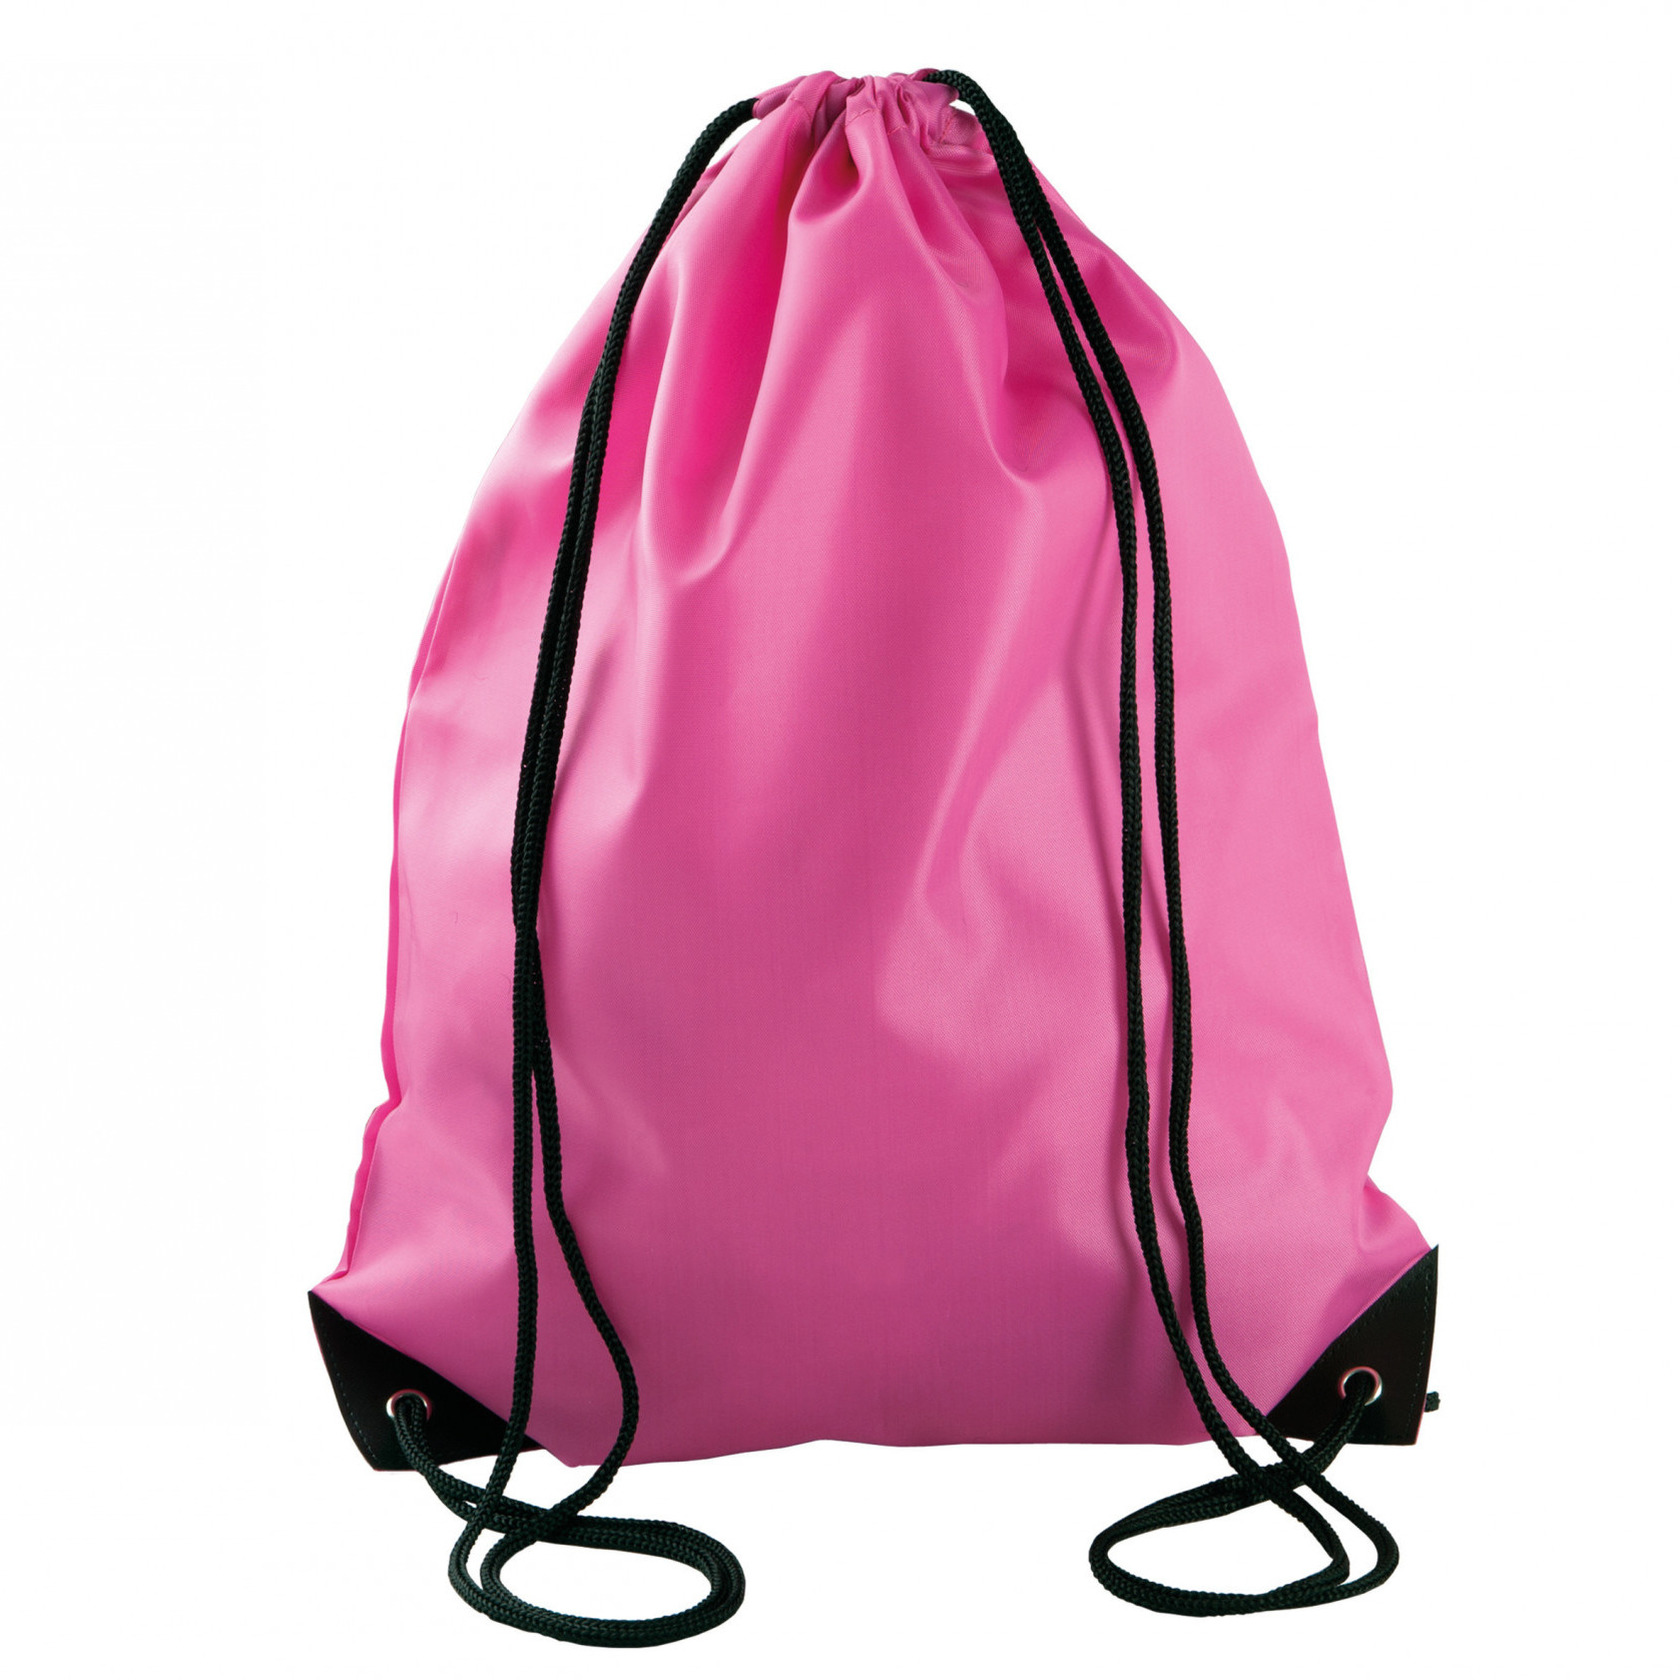 Afbeelding van Sport gymtas/draagtas fuchsia roze met rijgkoord 34 x 44 cm van polyester